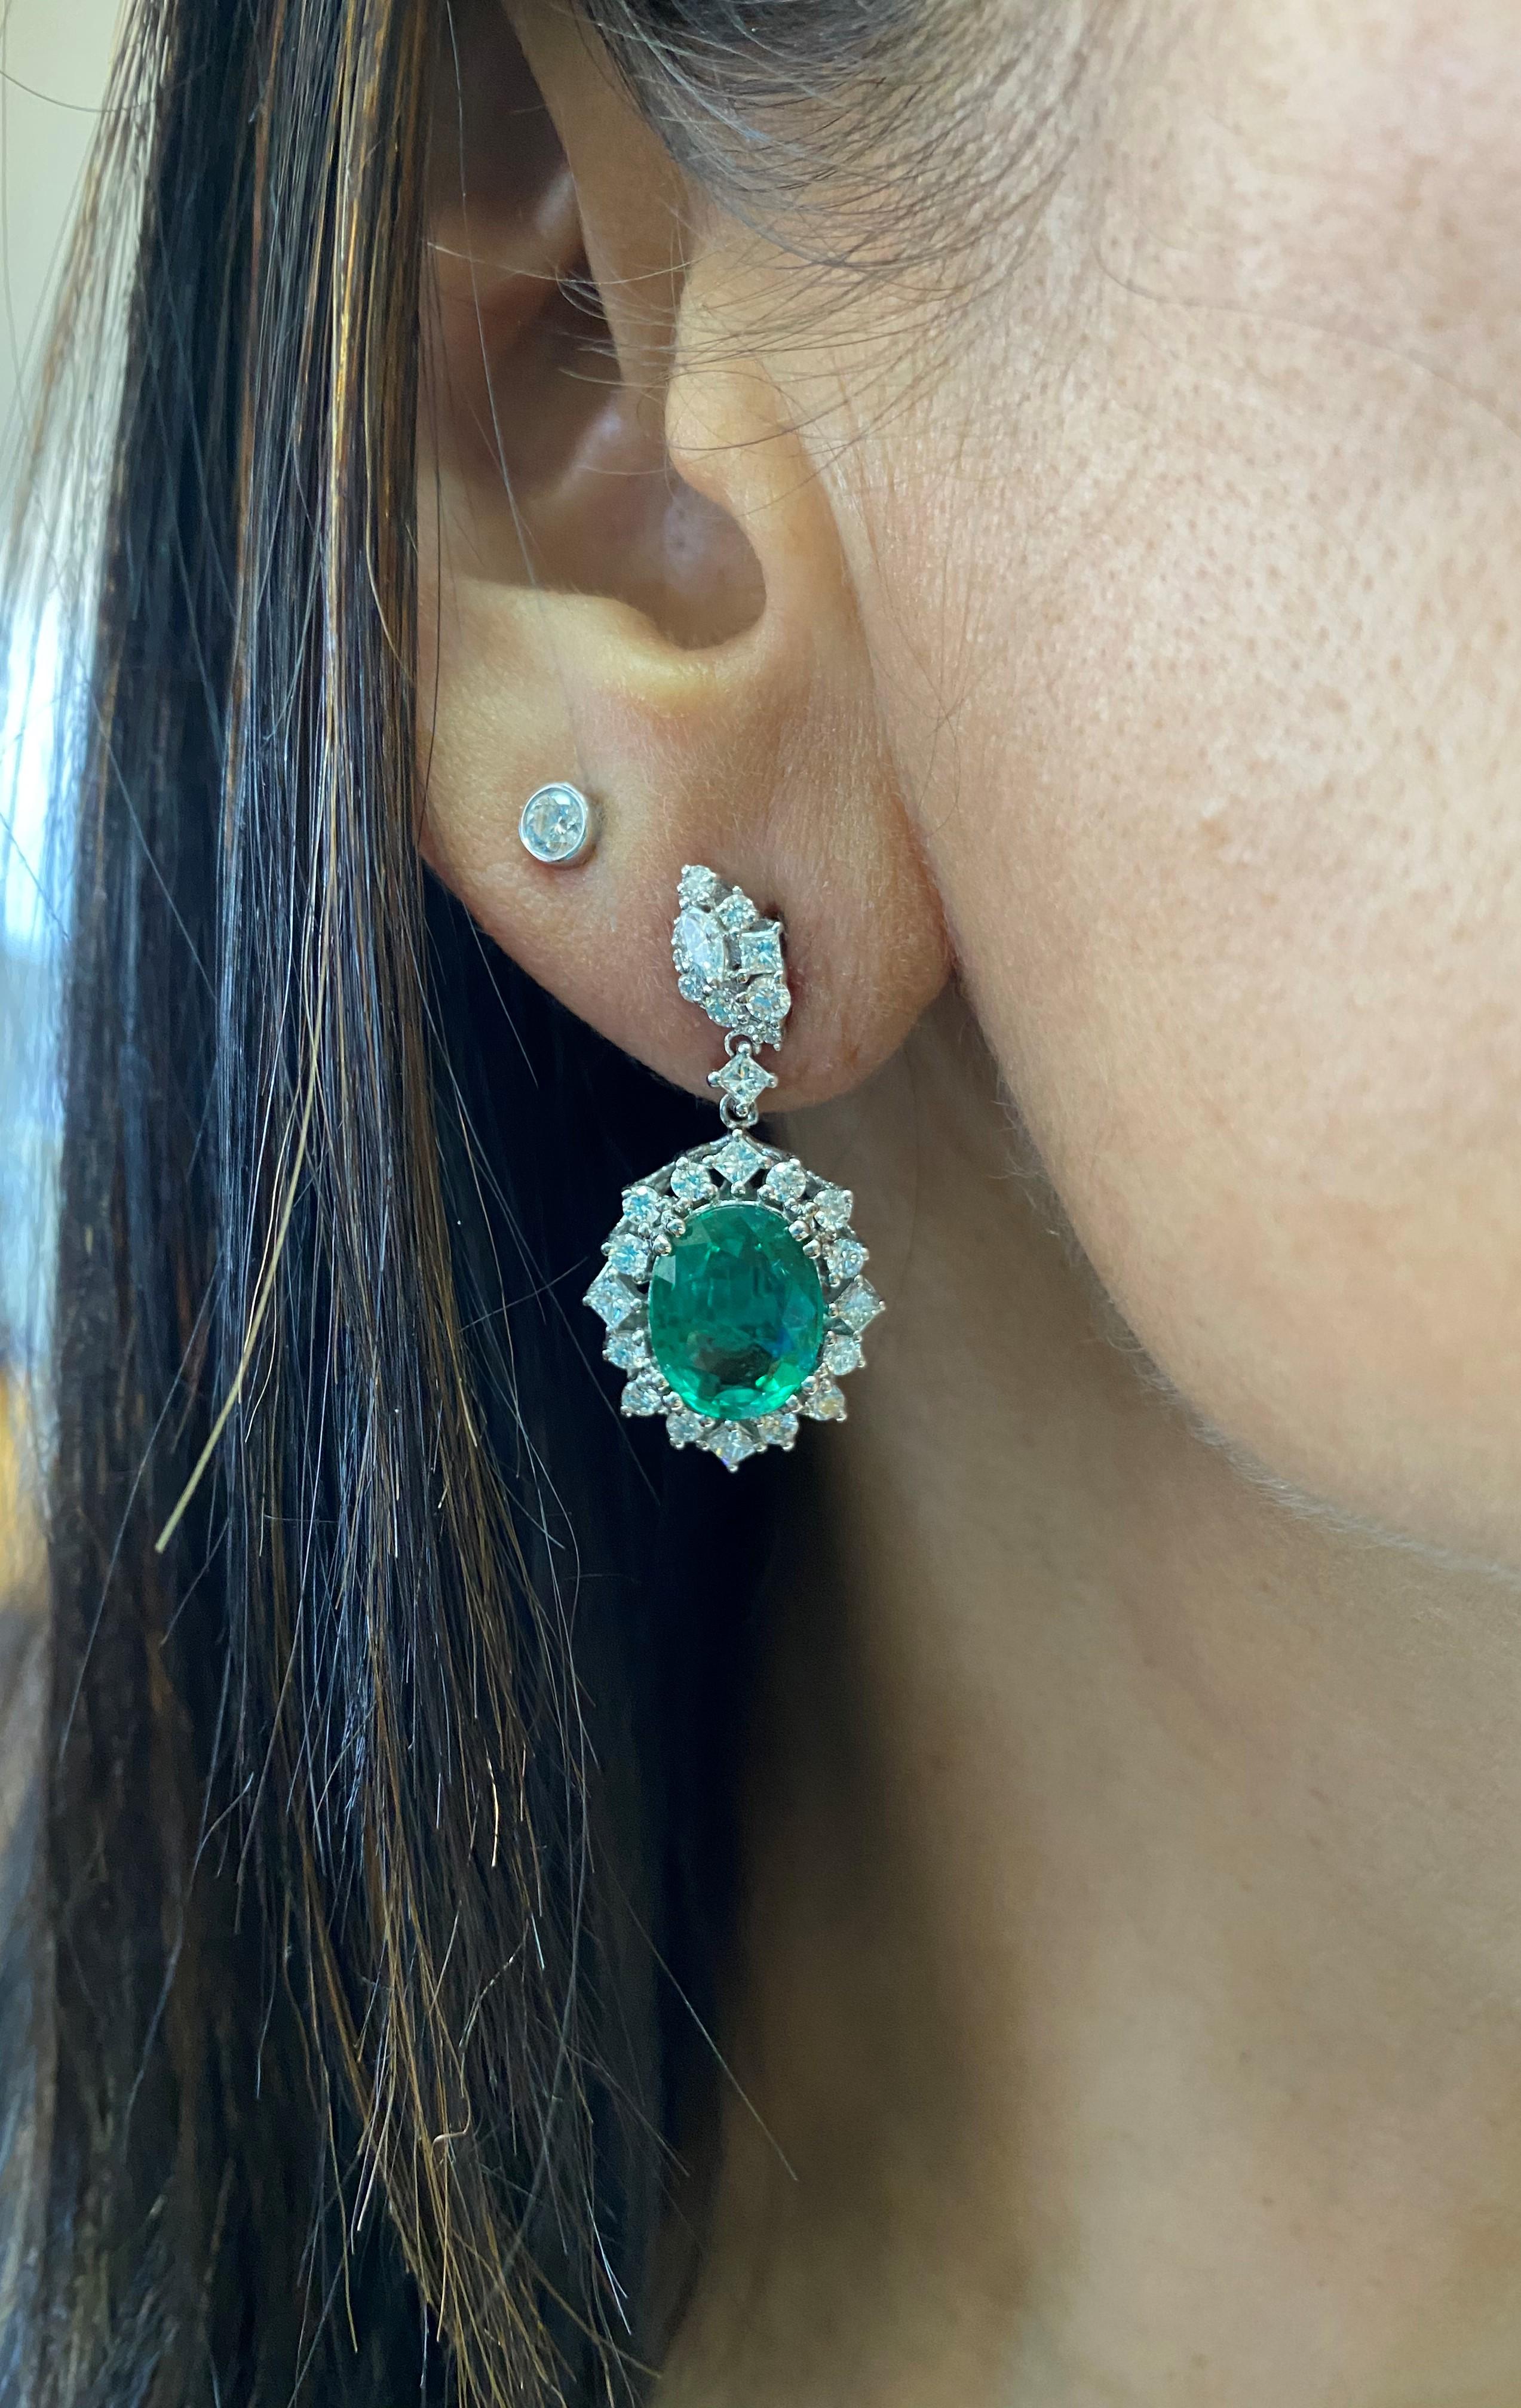 white gold diamond earrings